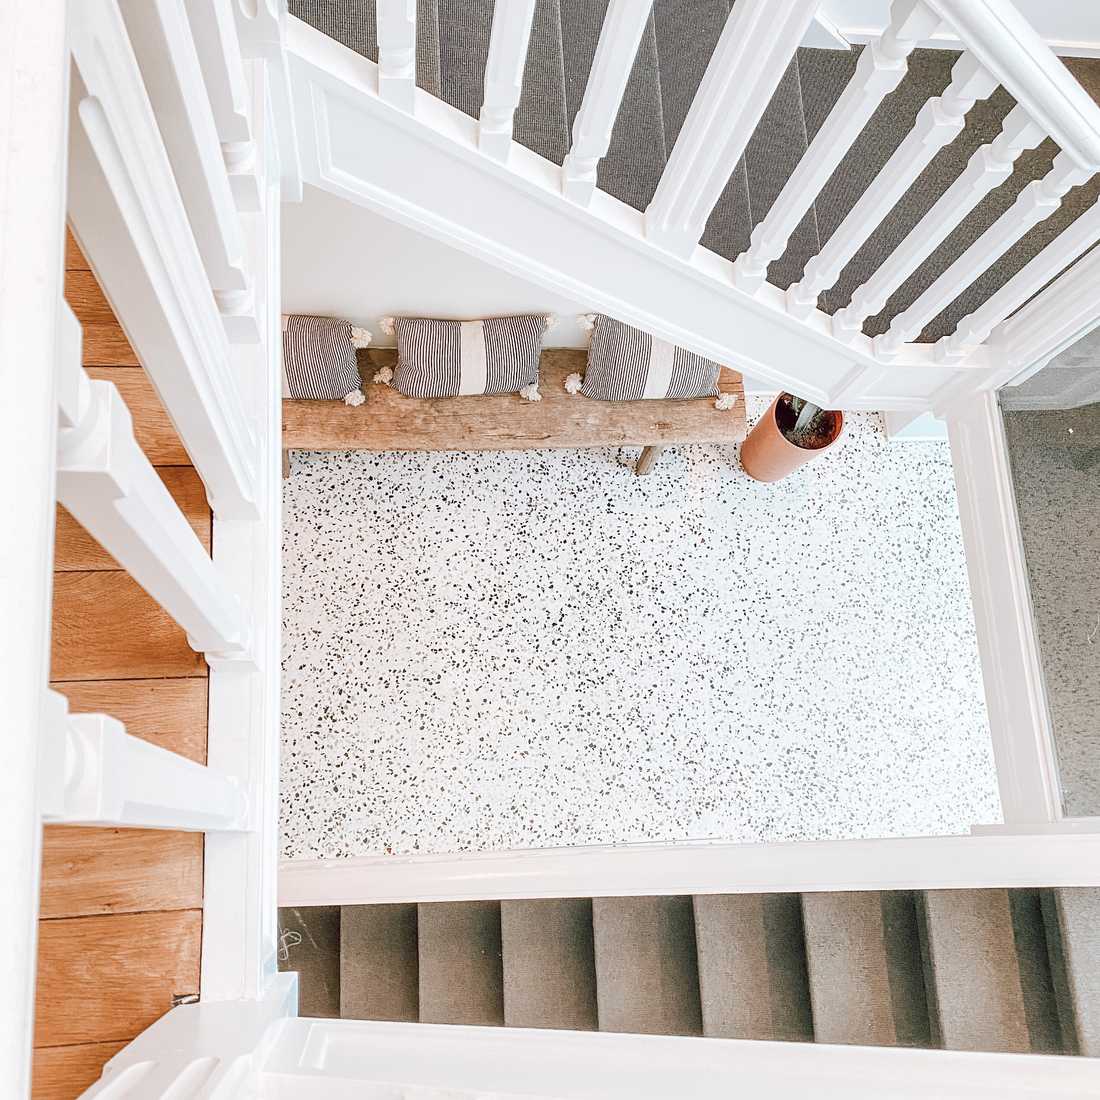 Escalier sur mesure dans une maison de maître modernisée par un architecte d'intérieur